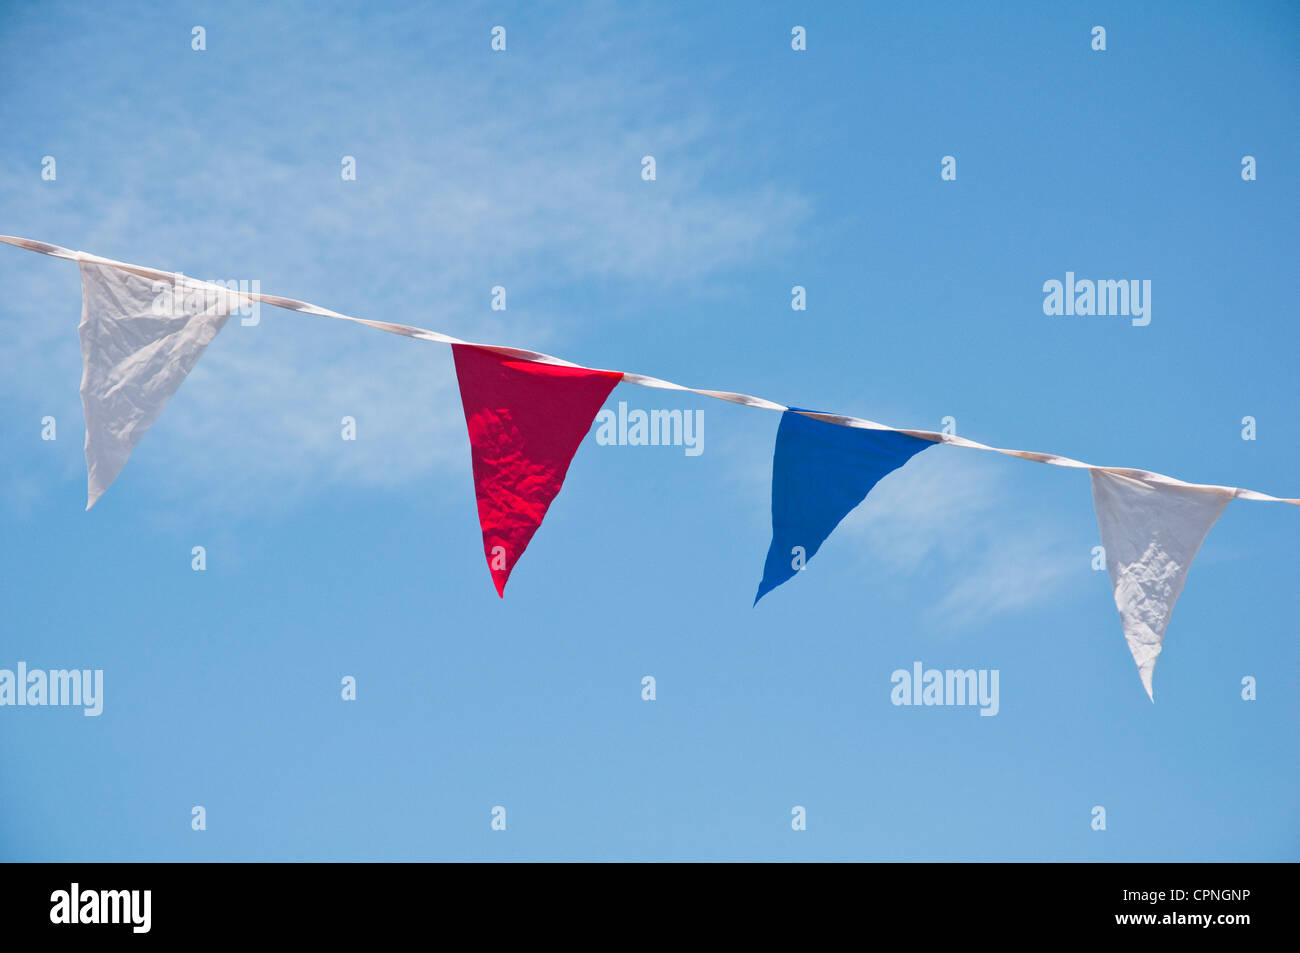 Bunting banderas: rojo, blanco y azul - contra un cielo azul. Foto de stock